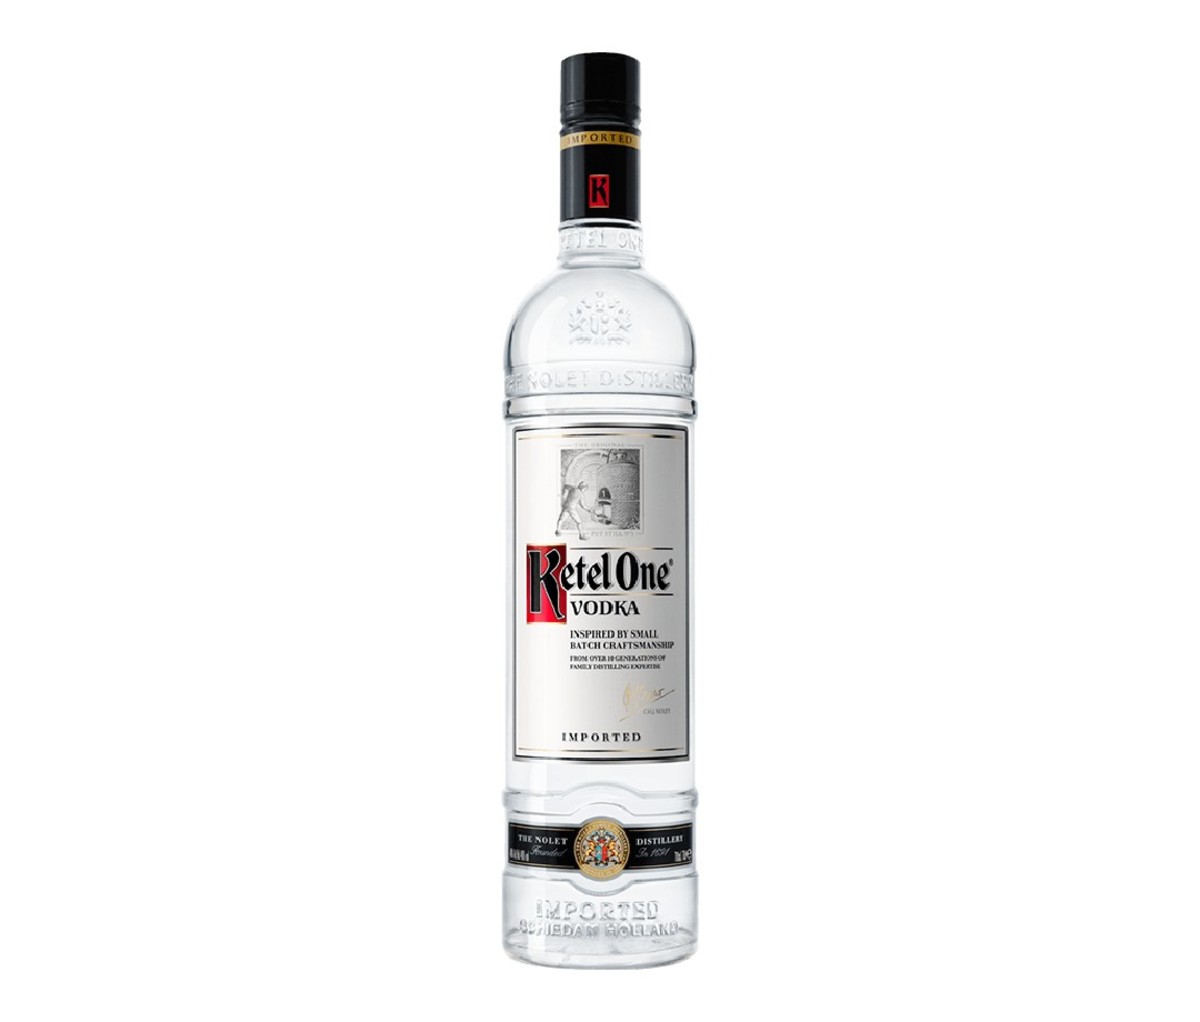 A bottle of Ketel One vodka